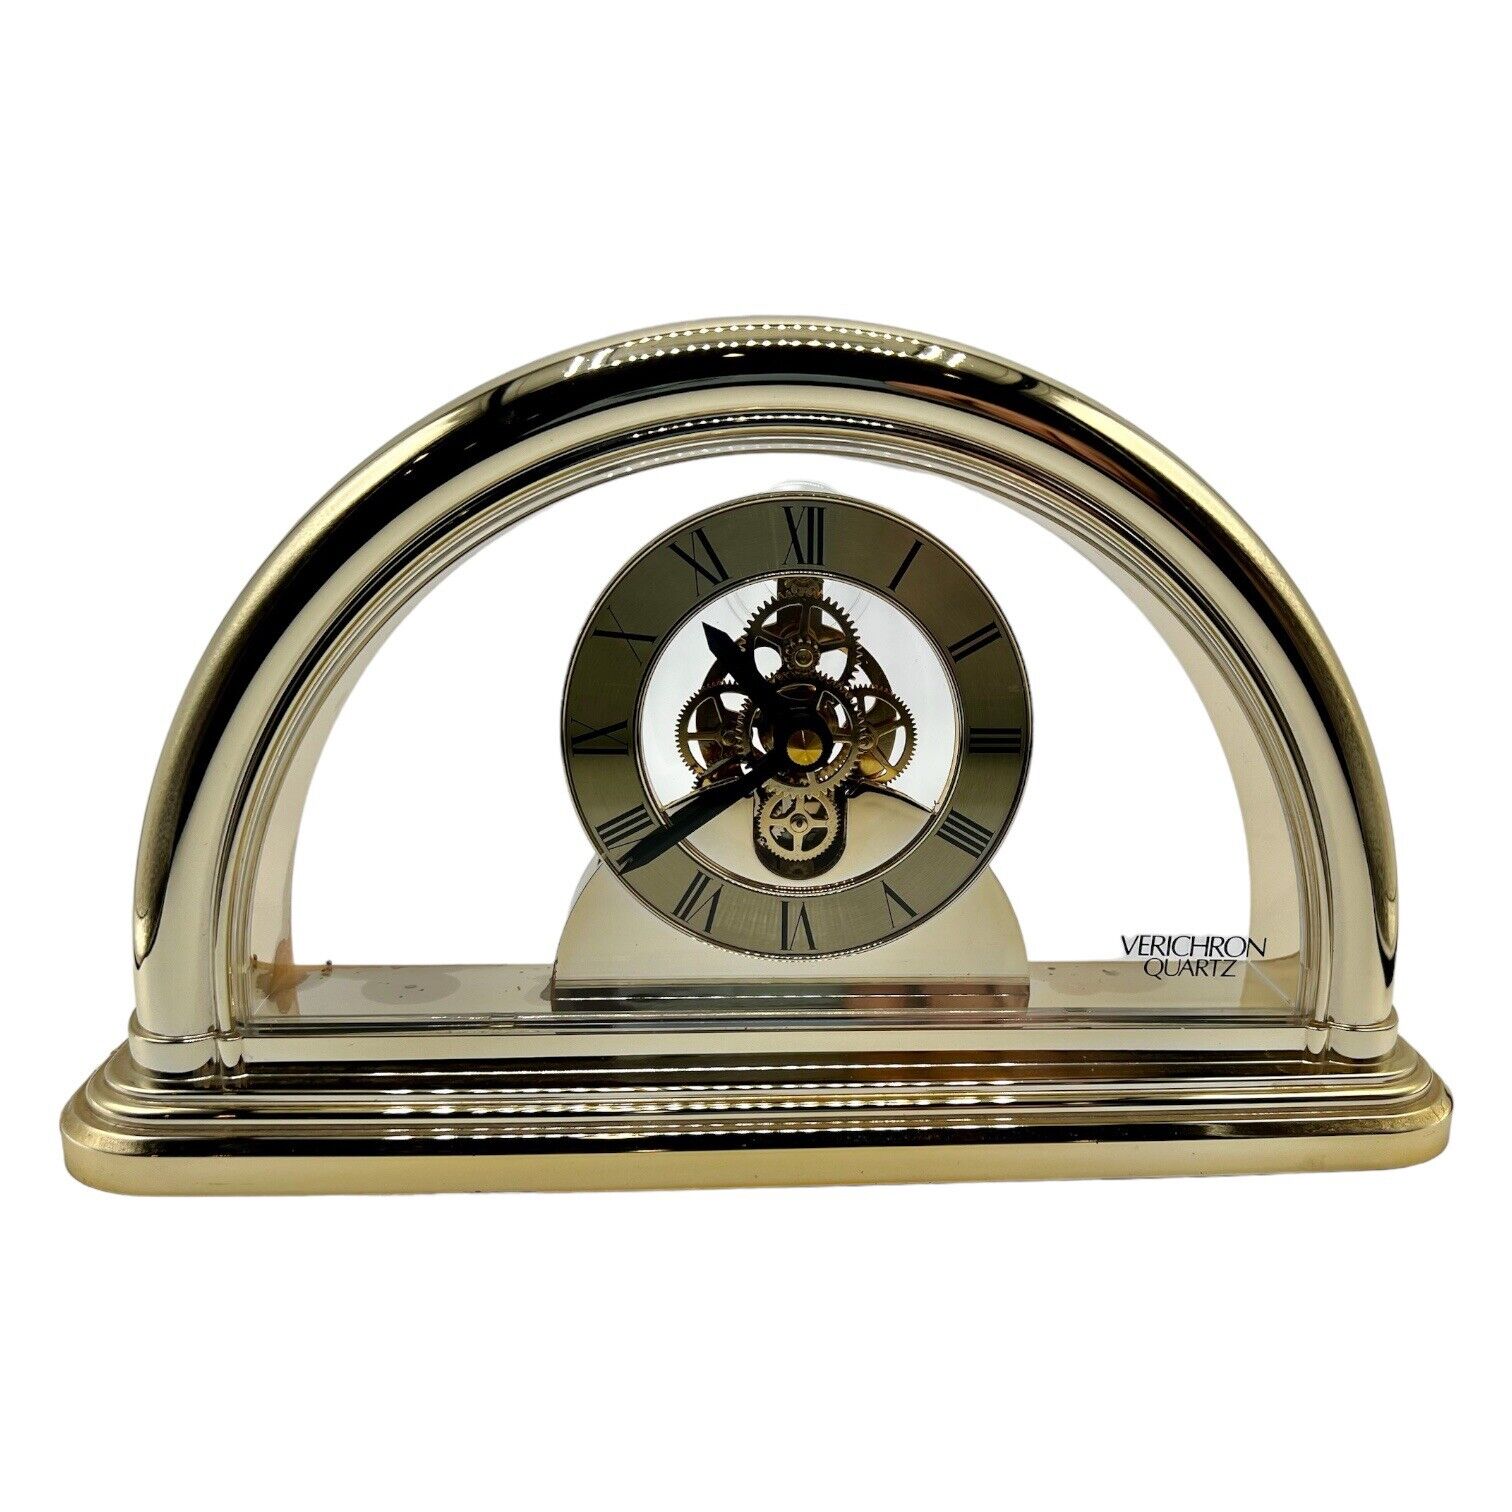 Classic Vintage Gold Harris & Mallow Verichron Quartz Clock. Japan Mantle Clock.